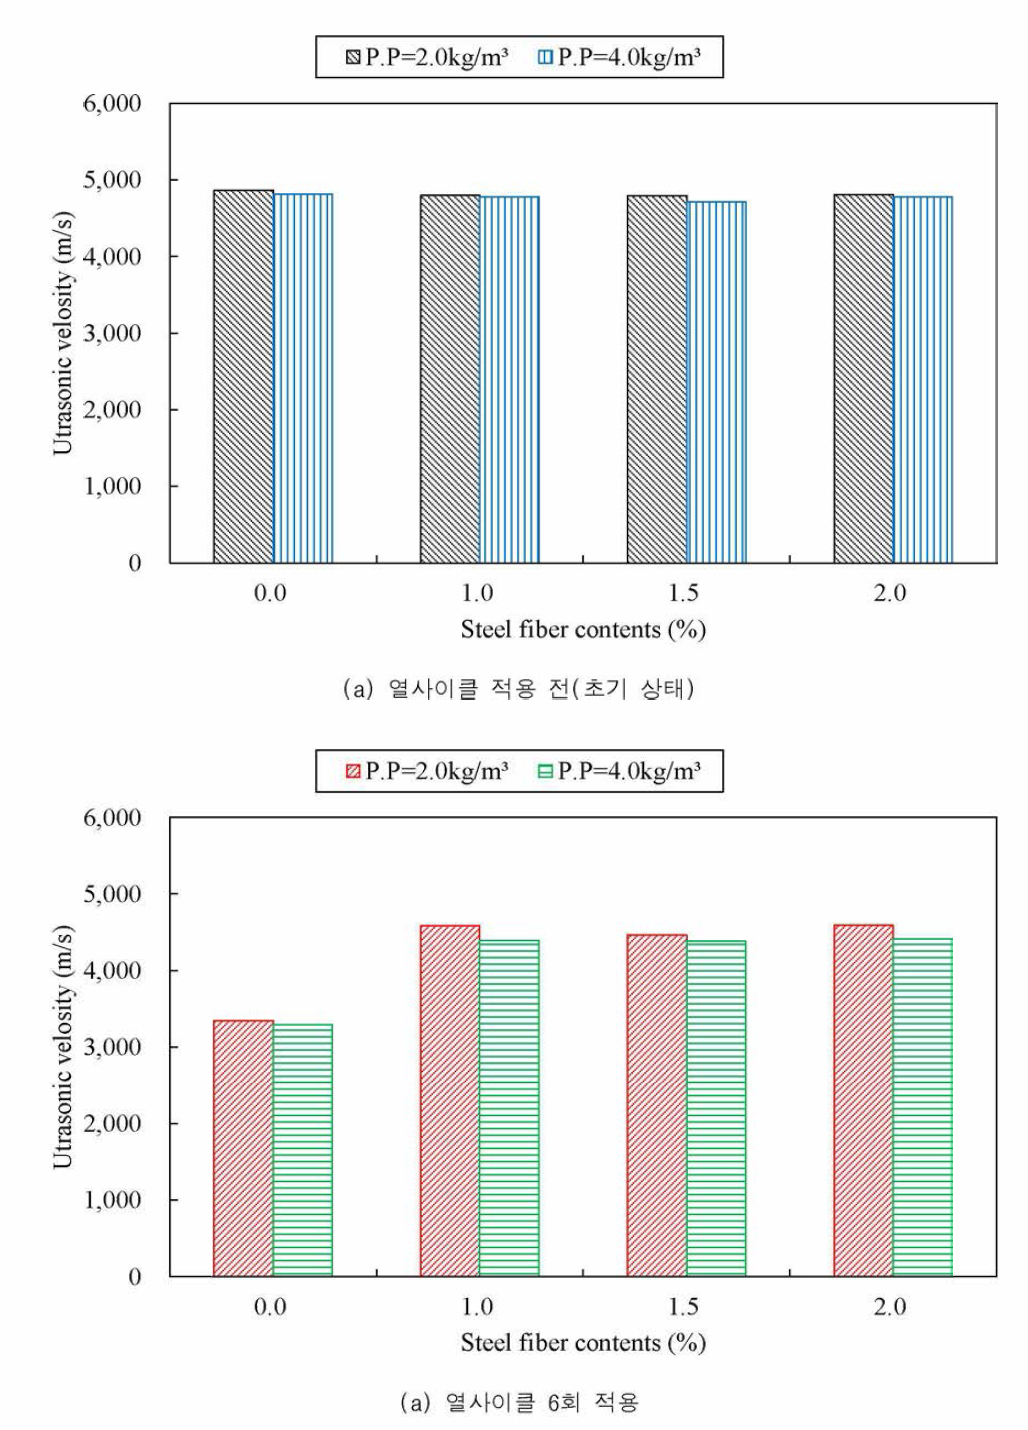 강섬유 혼입률별 P.P 섬유 혼입량에 따른 초음파속도 결과 비교